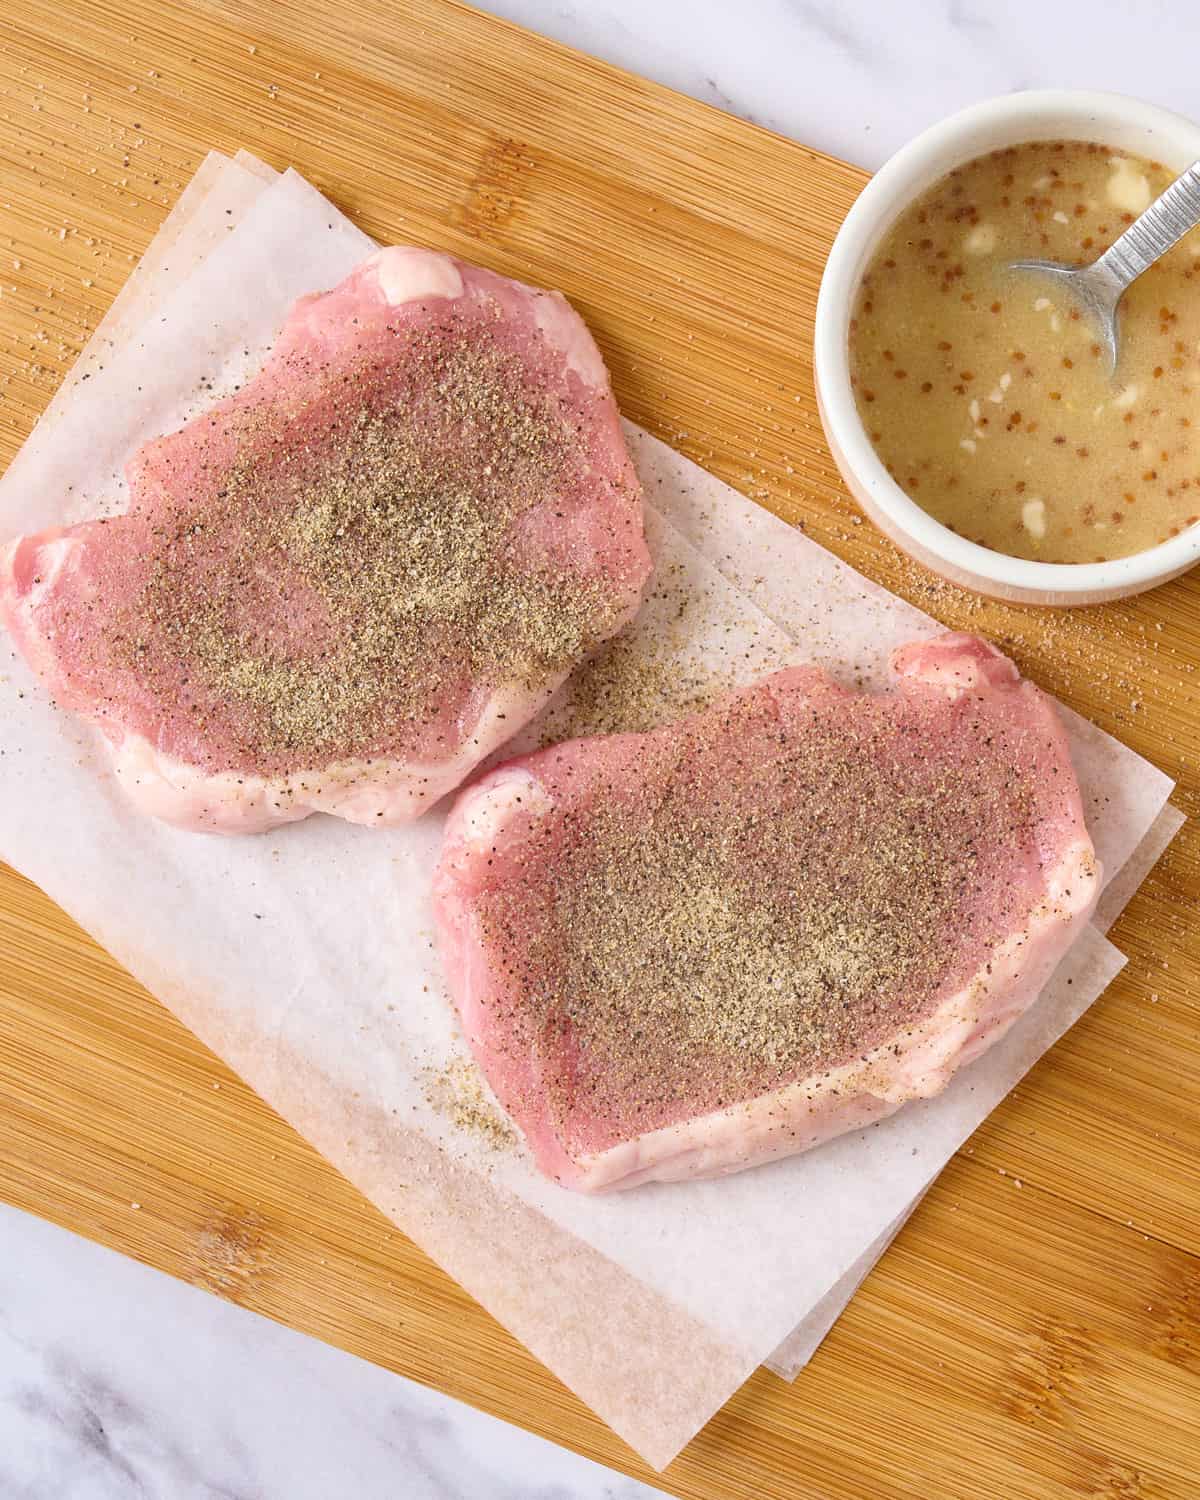 Seasoned pork chops on a cutting board.